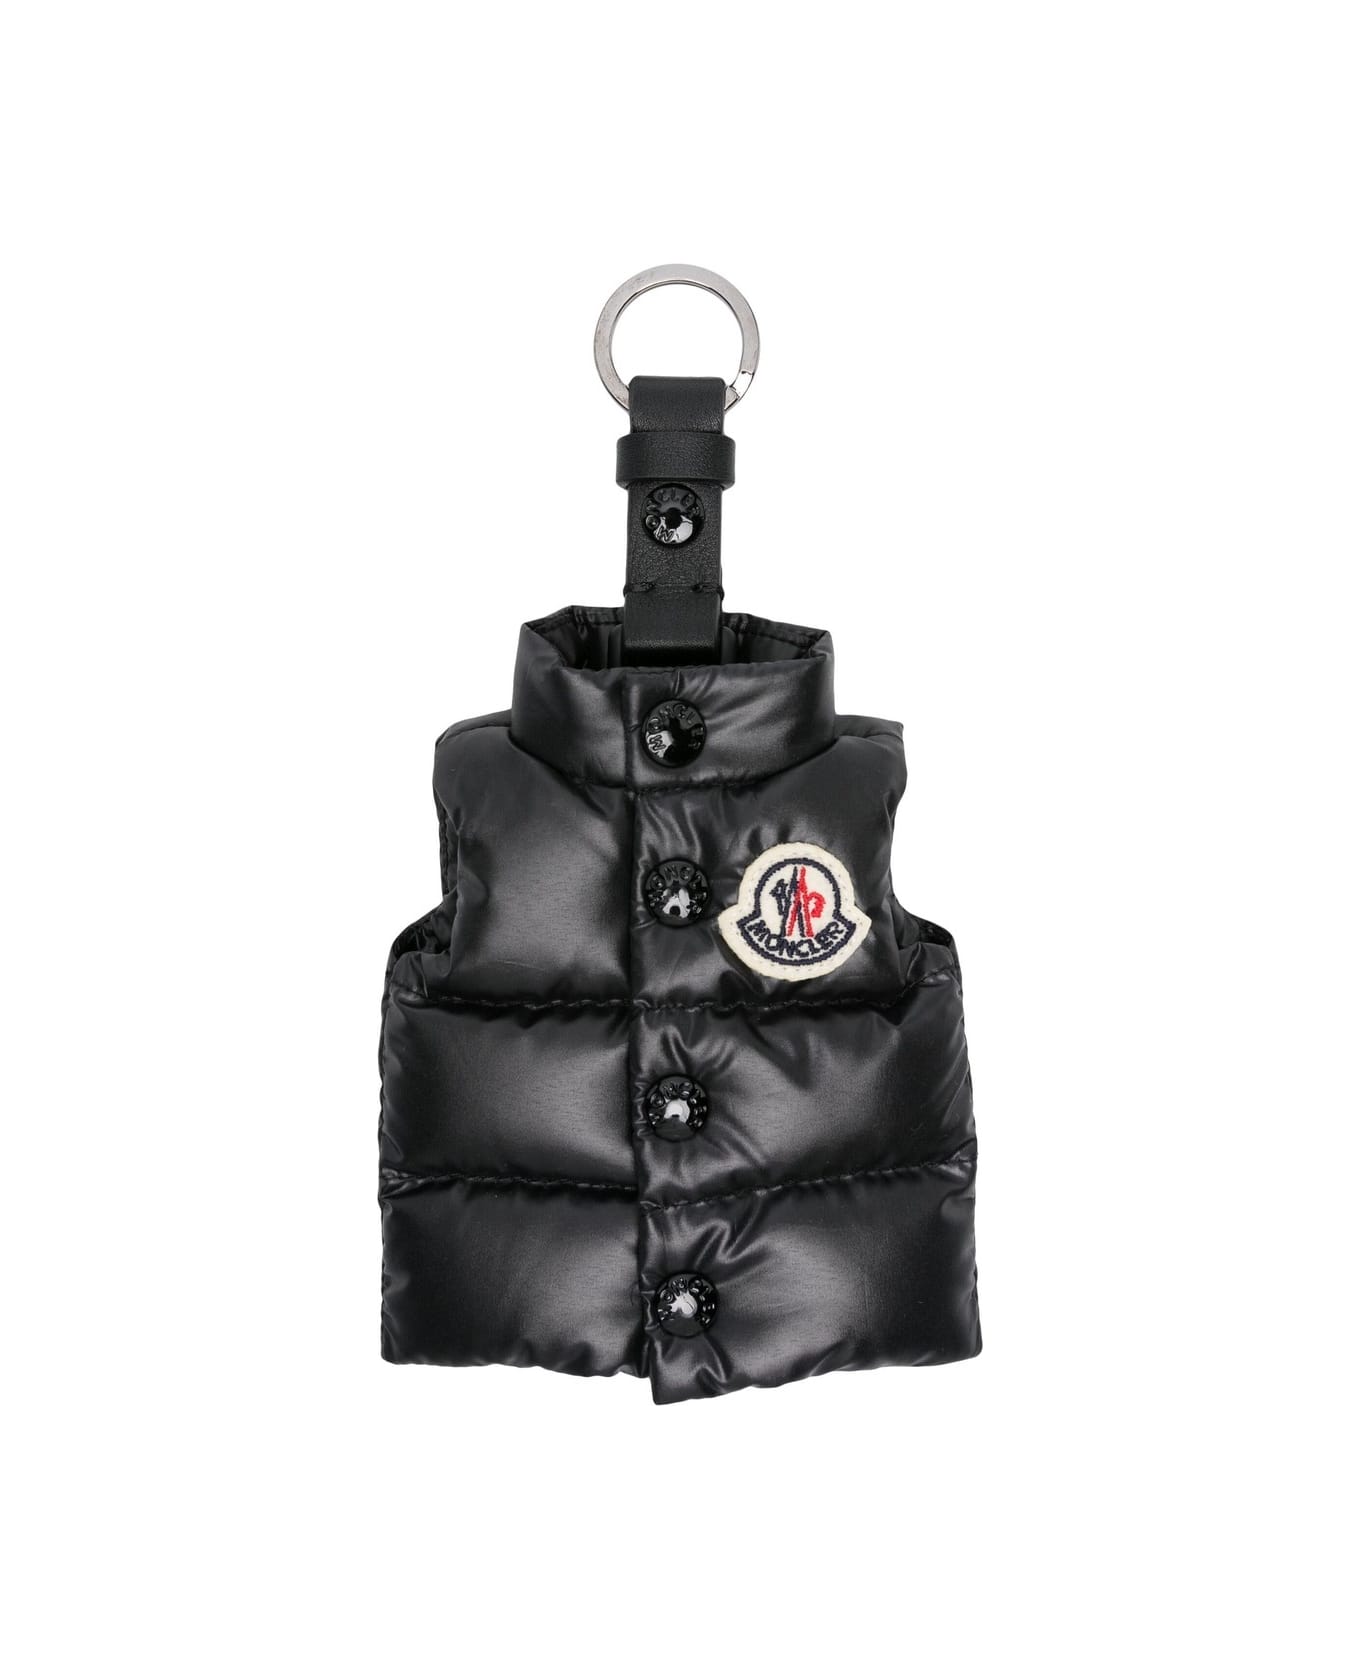 Moncler Black Vest Shaped Keyring - Black